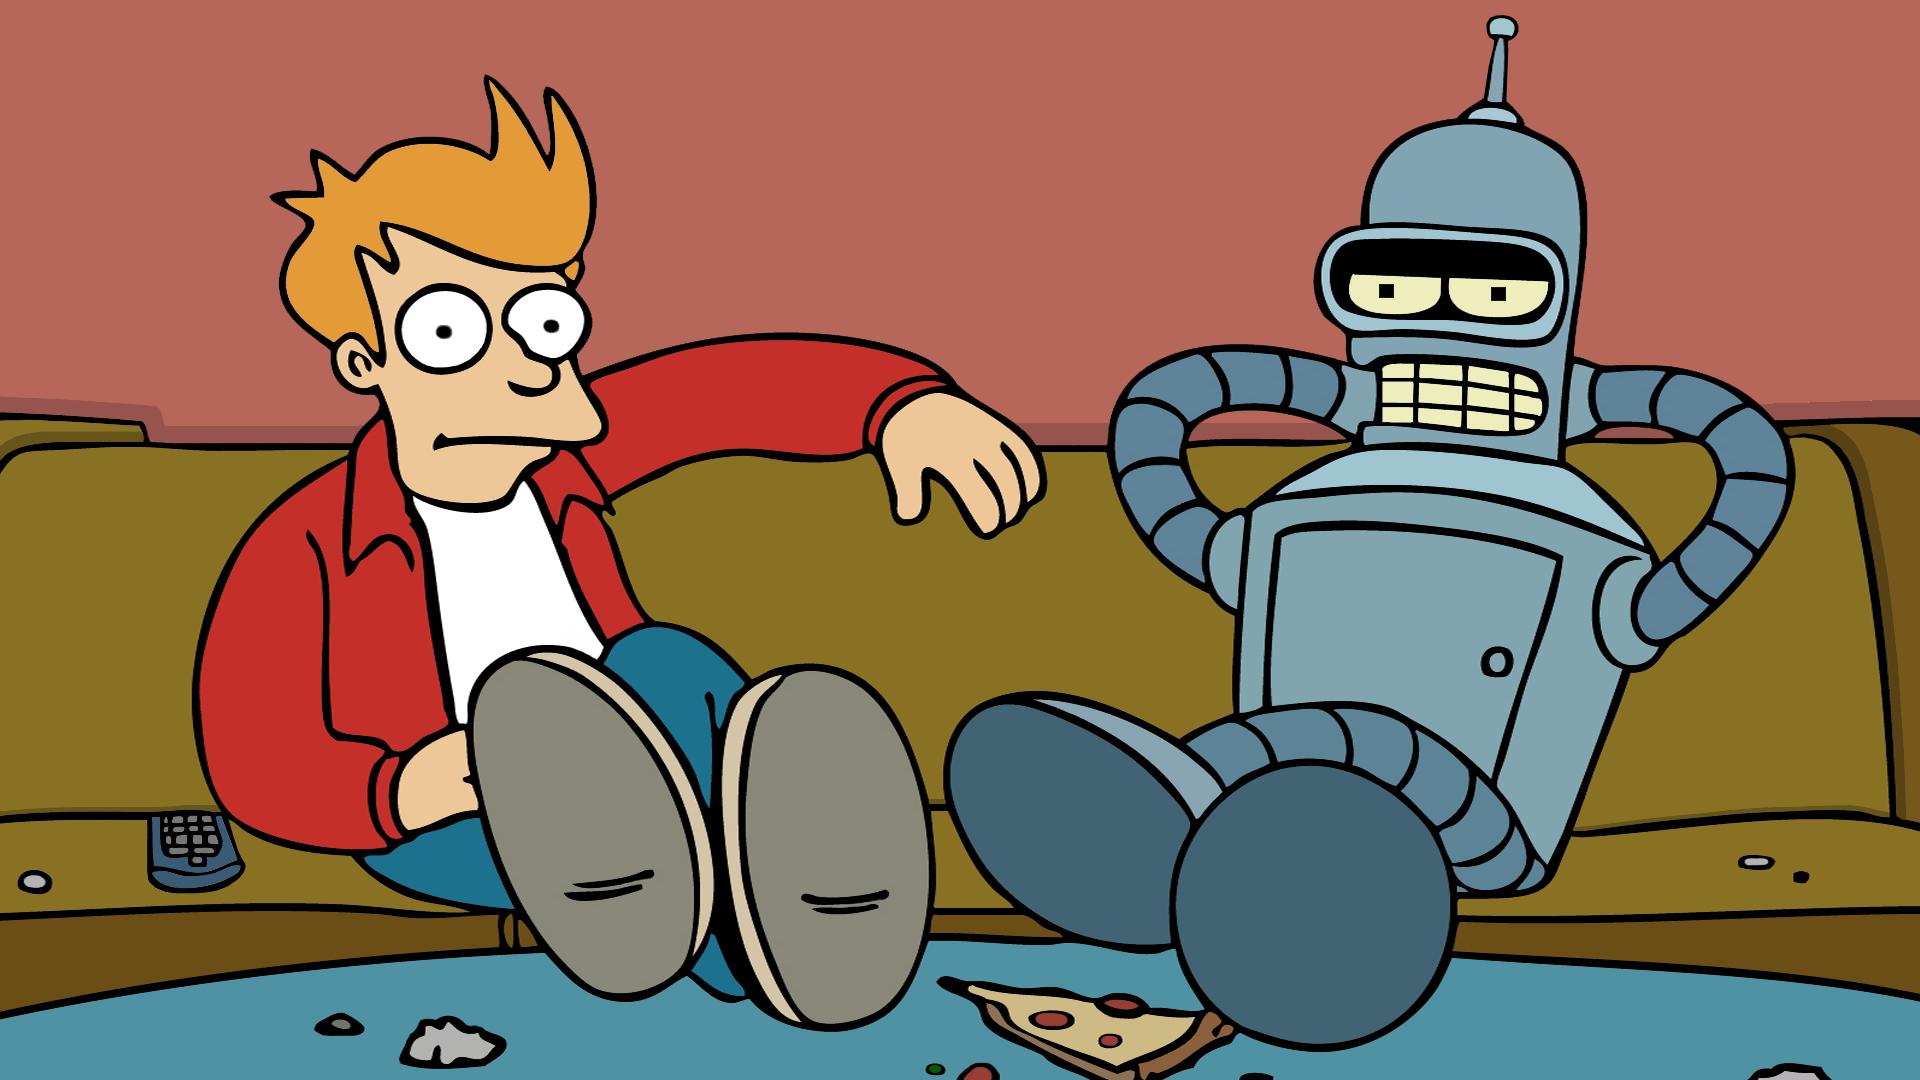 Bender Futurama Fry Futurama Futurama Robot Sci Fi 1920x1080